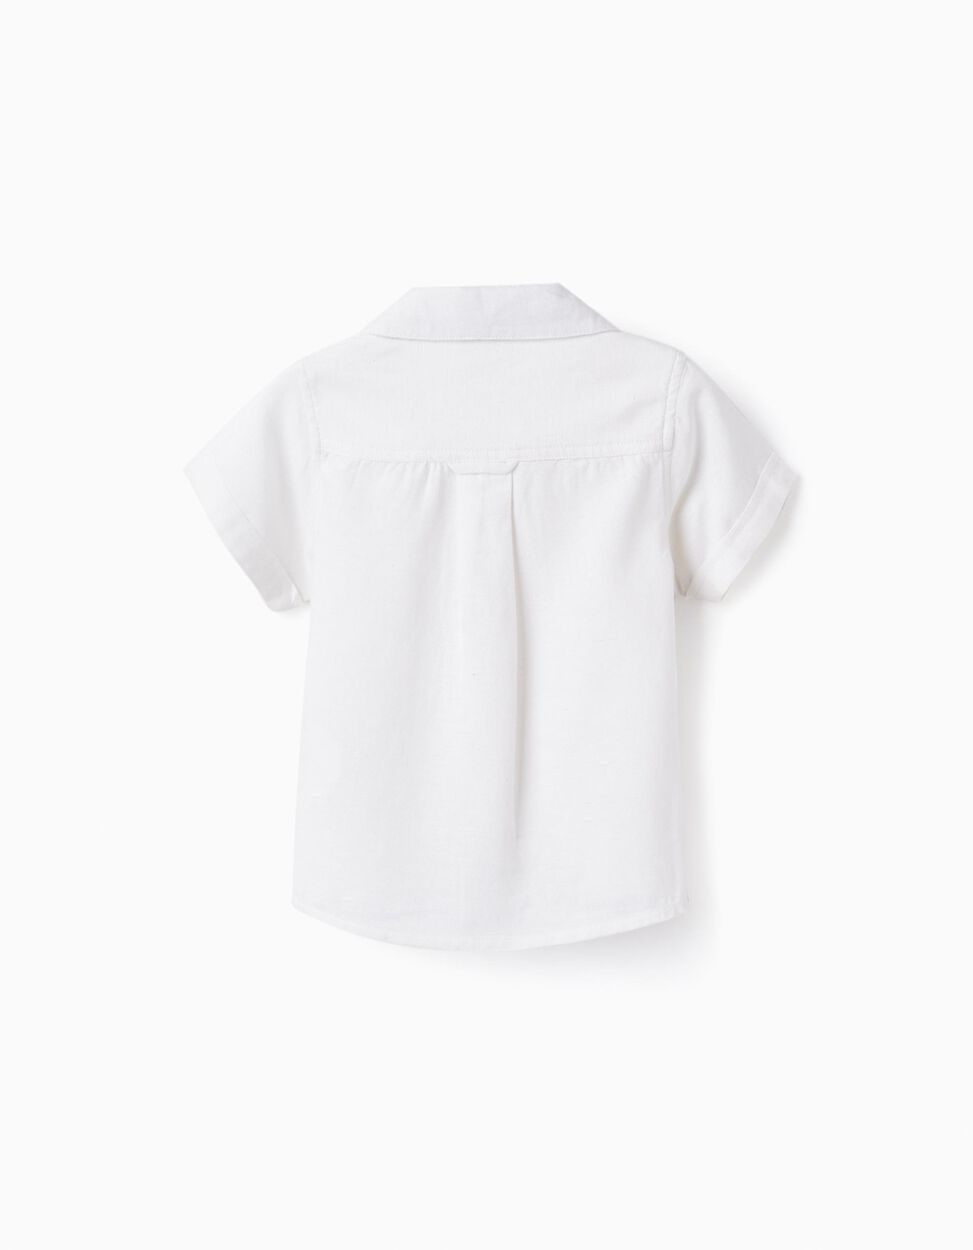 Buy Online Short Sleeve Linen Shirt for Baby Boys, White